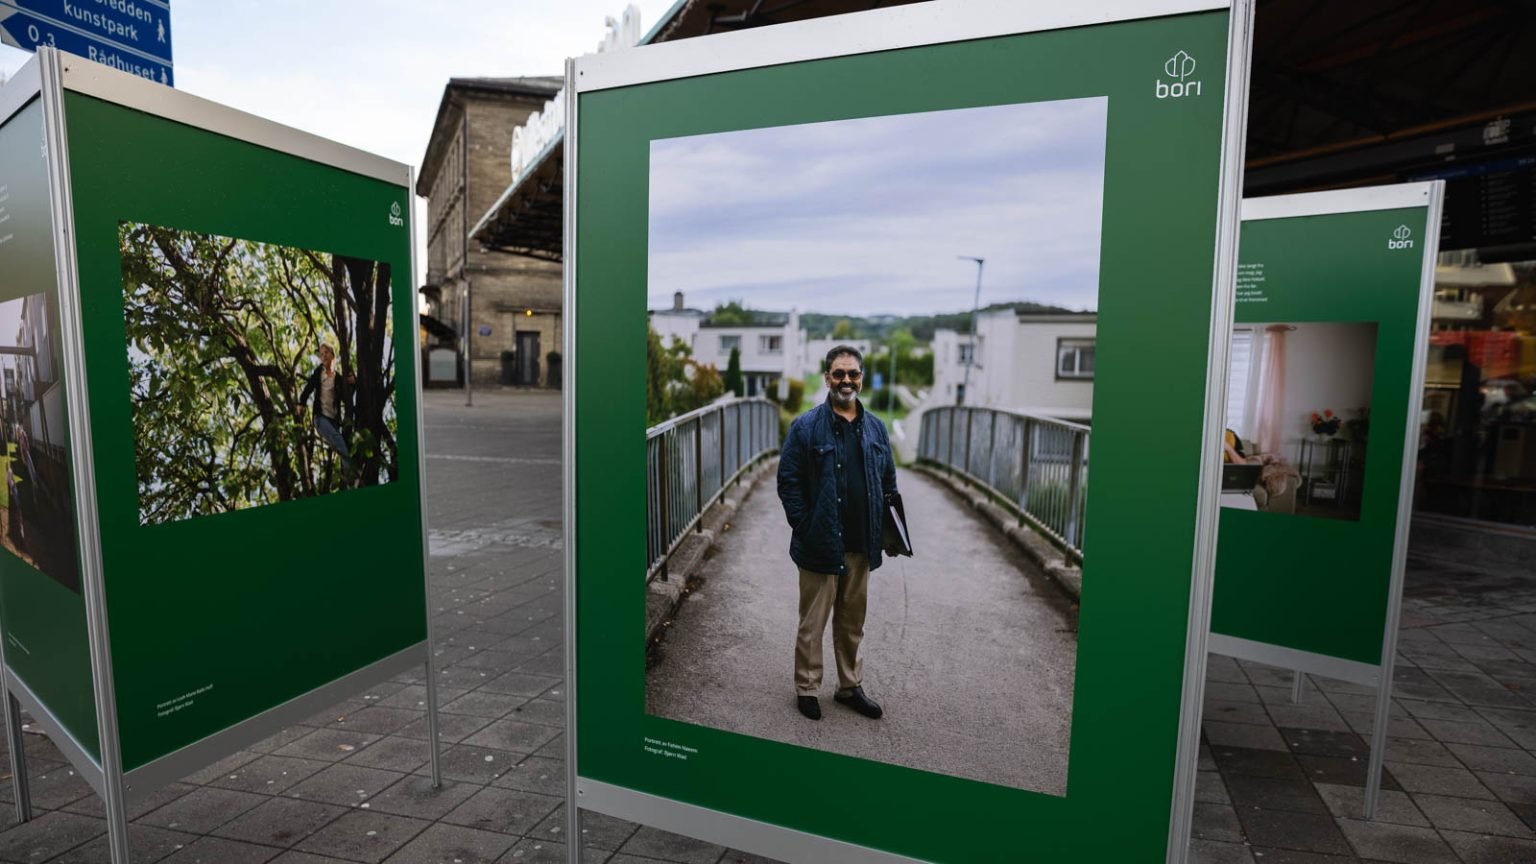 Bilde av utstilling på grønne plakater, med en mann som står på bro med dokumenter under armen.